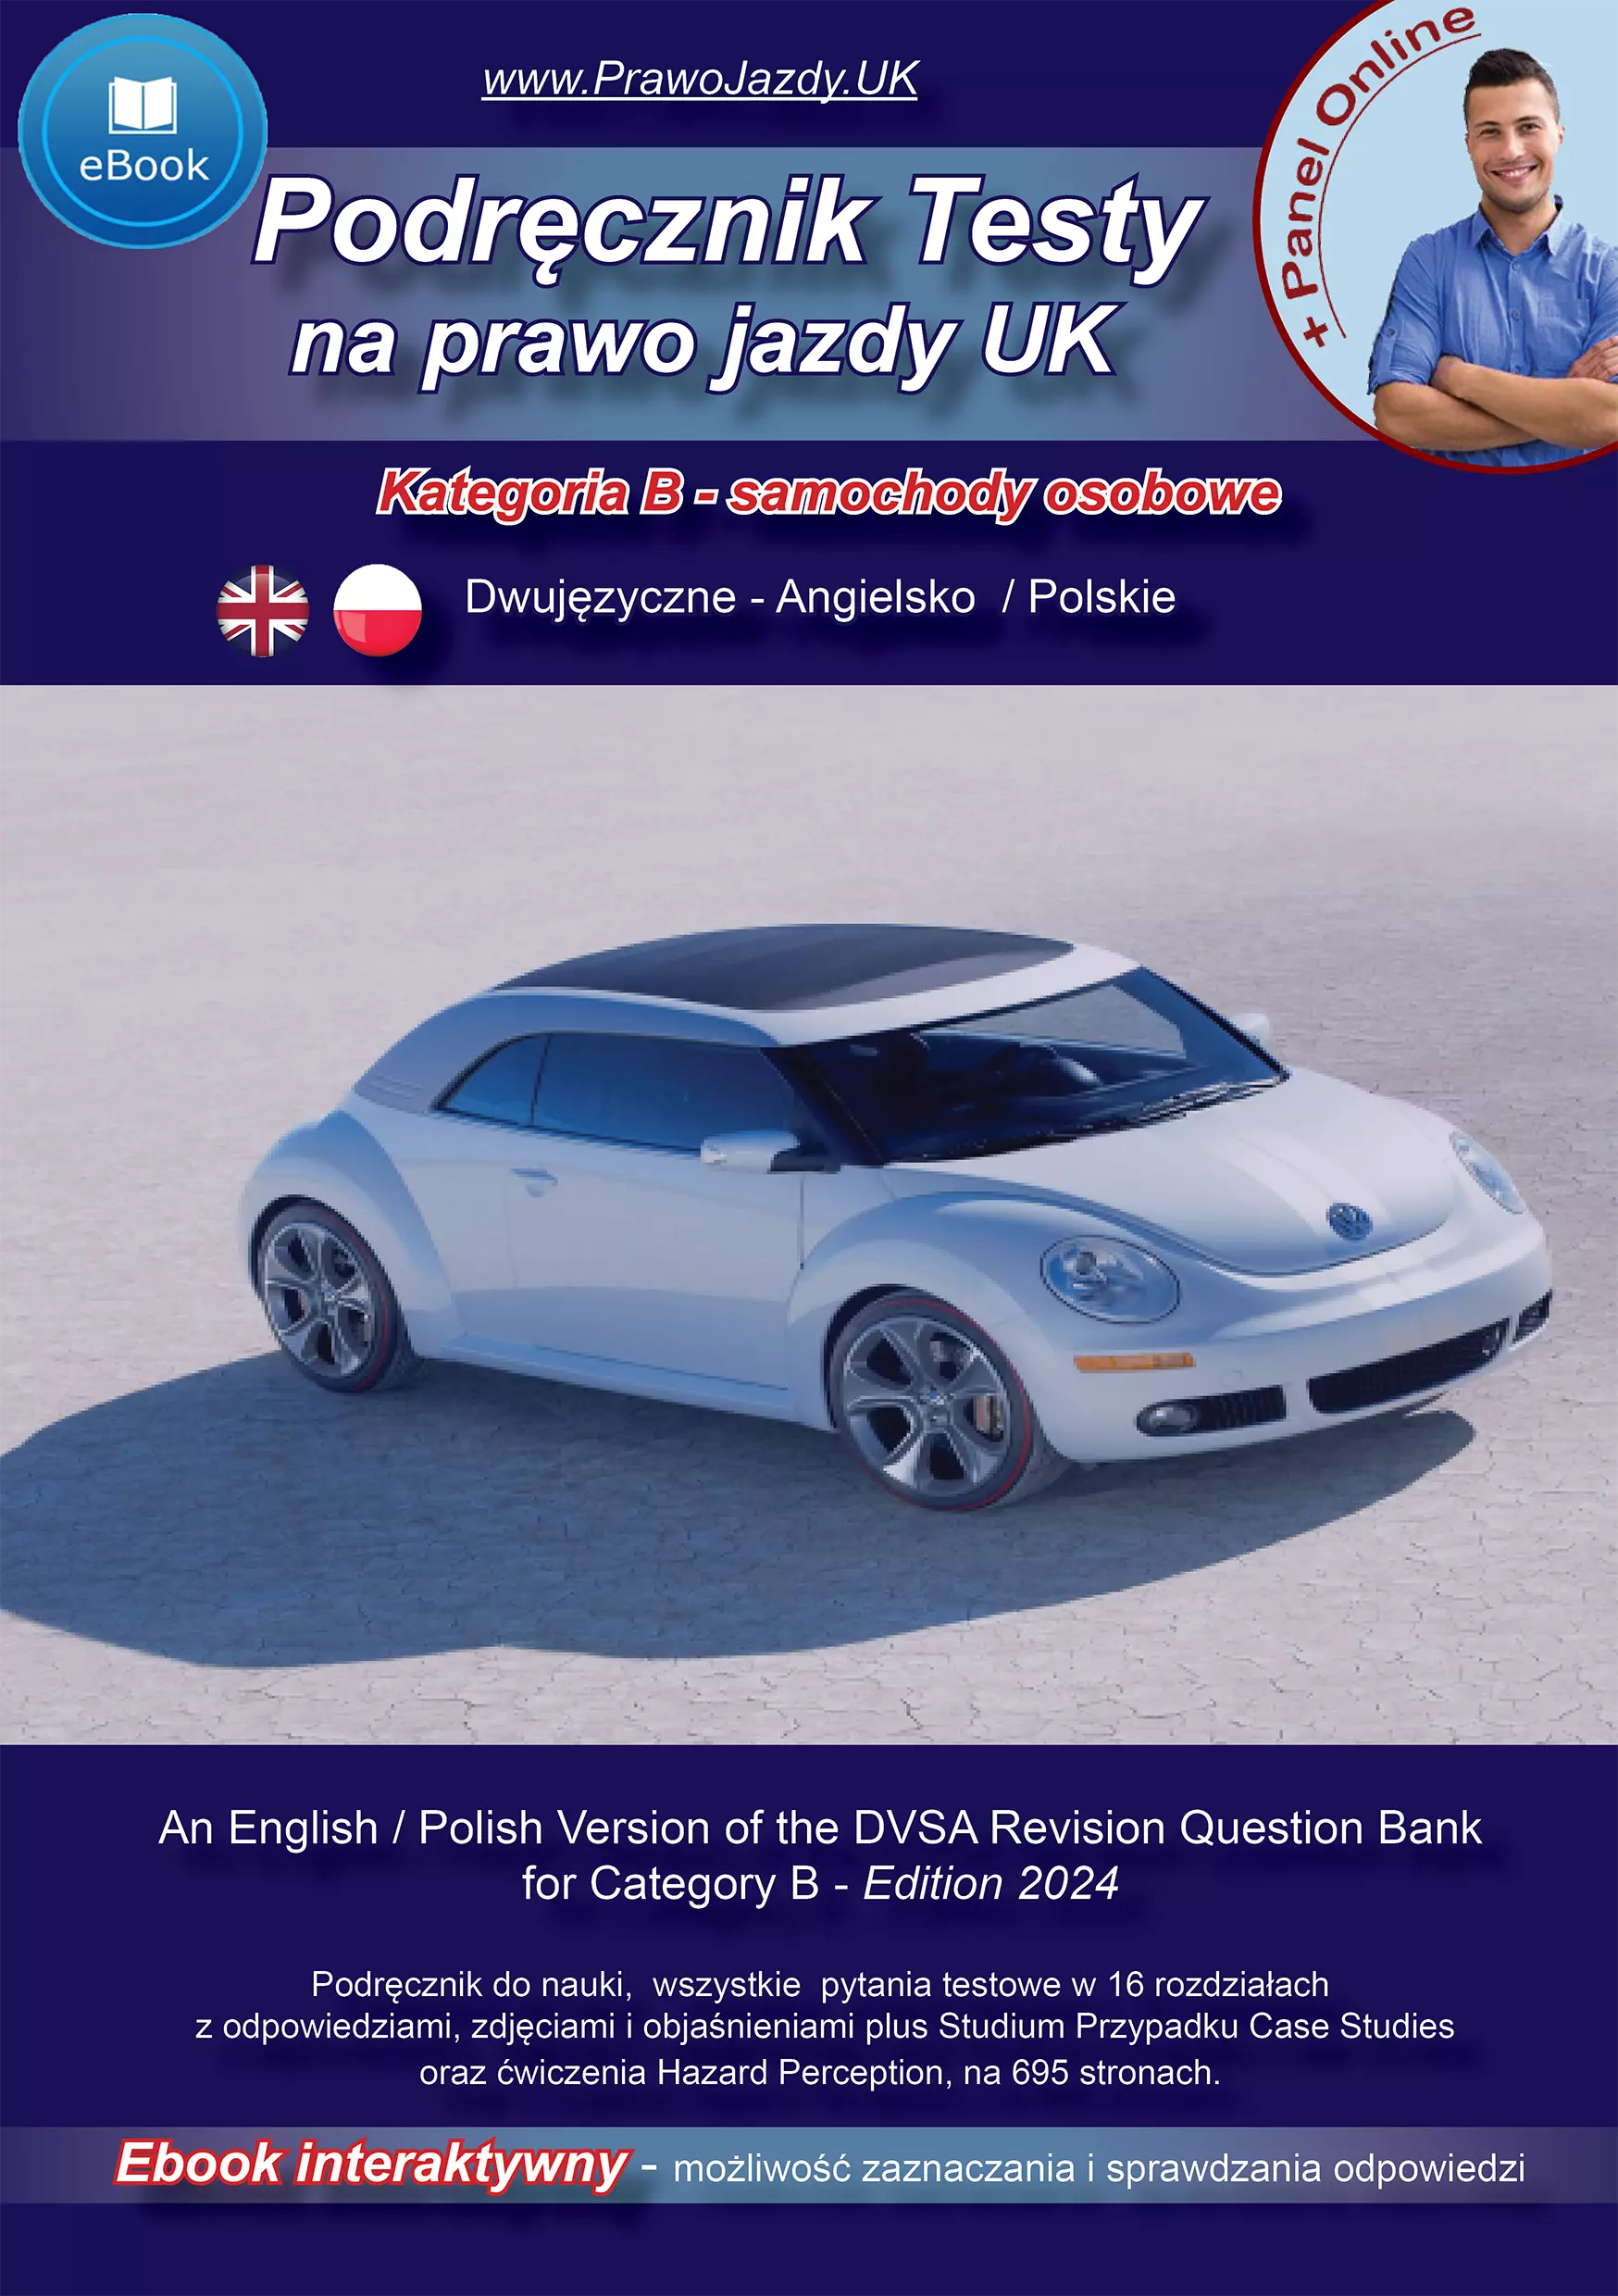 Dwujęzyczne Angielsko - Polskie Testy na prawo jazdy w UK